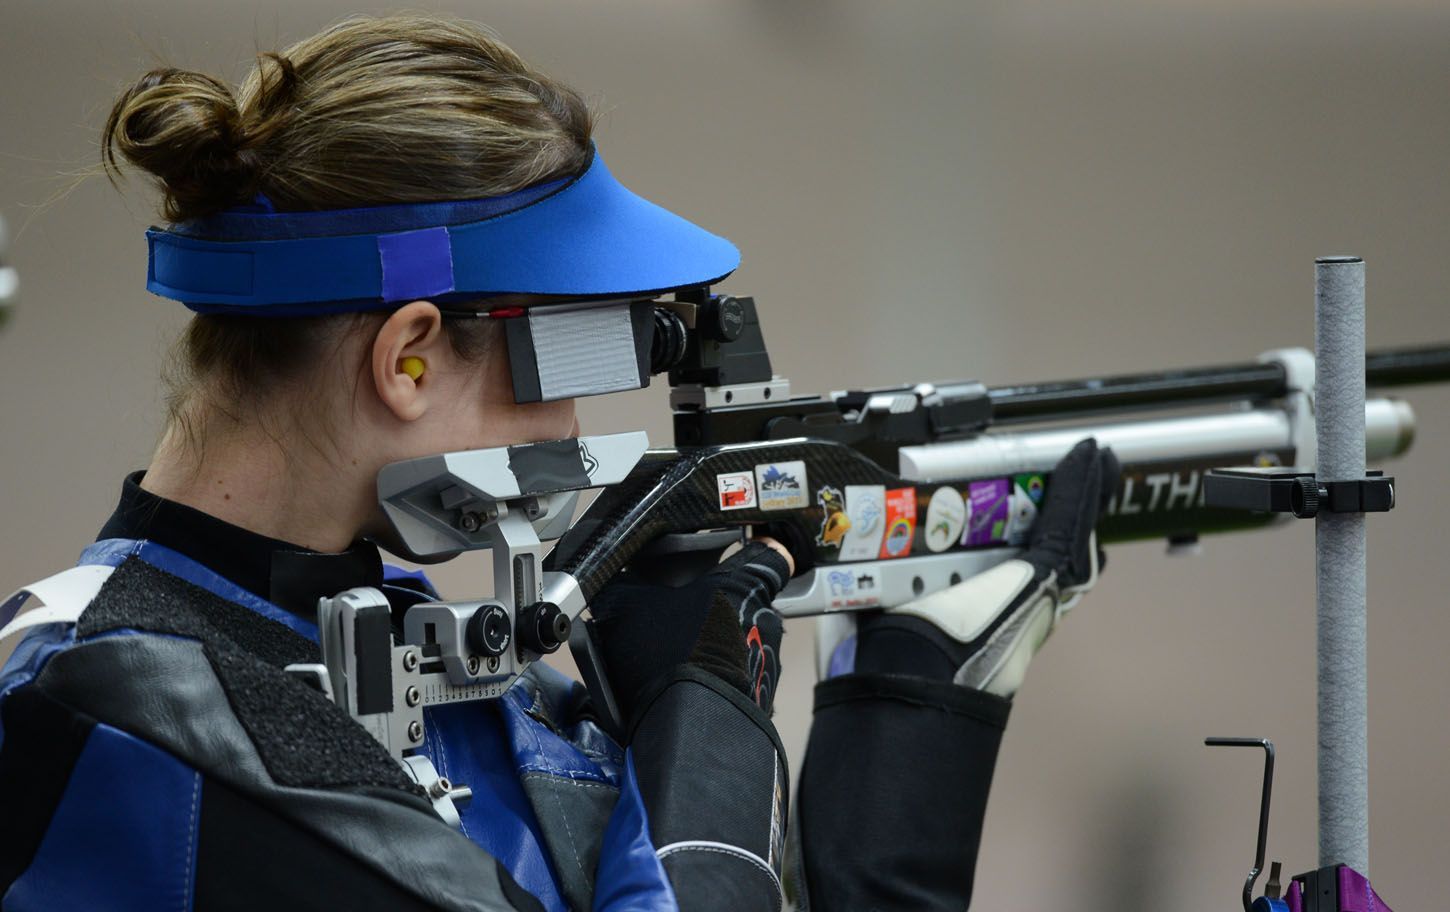 Česká střelkyně Adéla Sýkorová střílí z malorážky v kvalifikaci na 50 metrů na OH 2012 v Londýně.